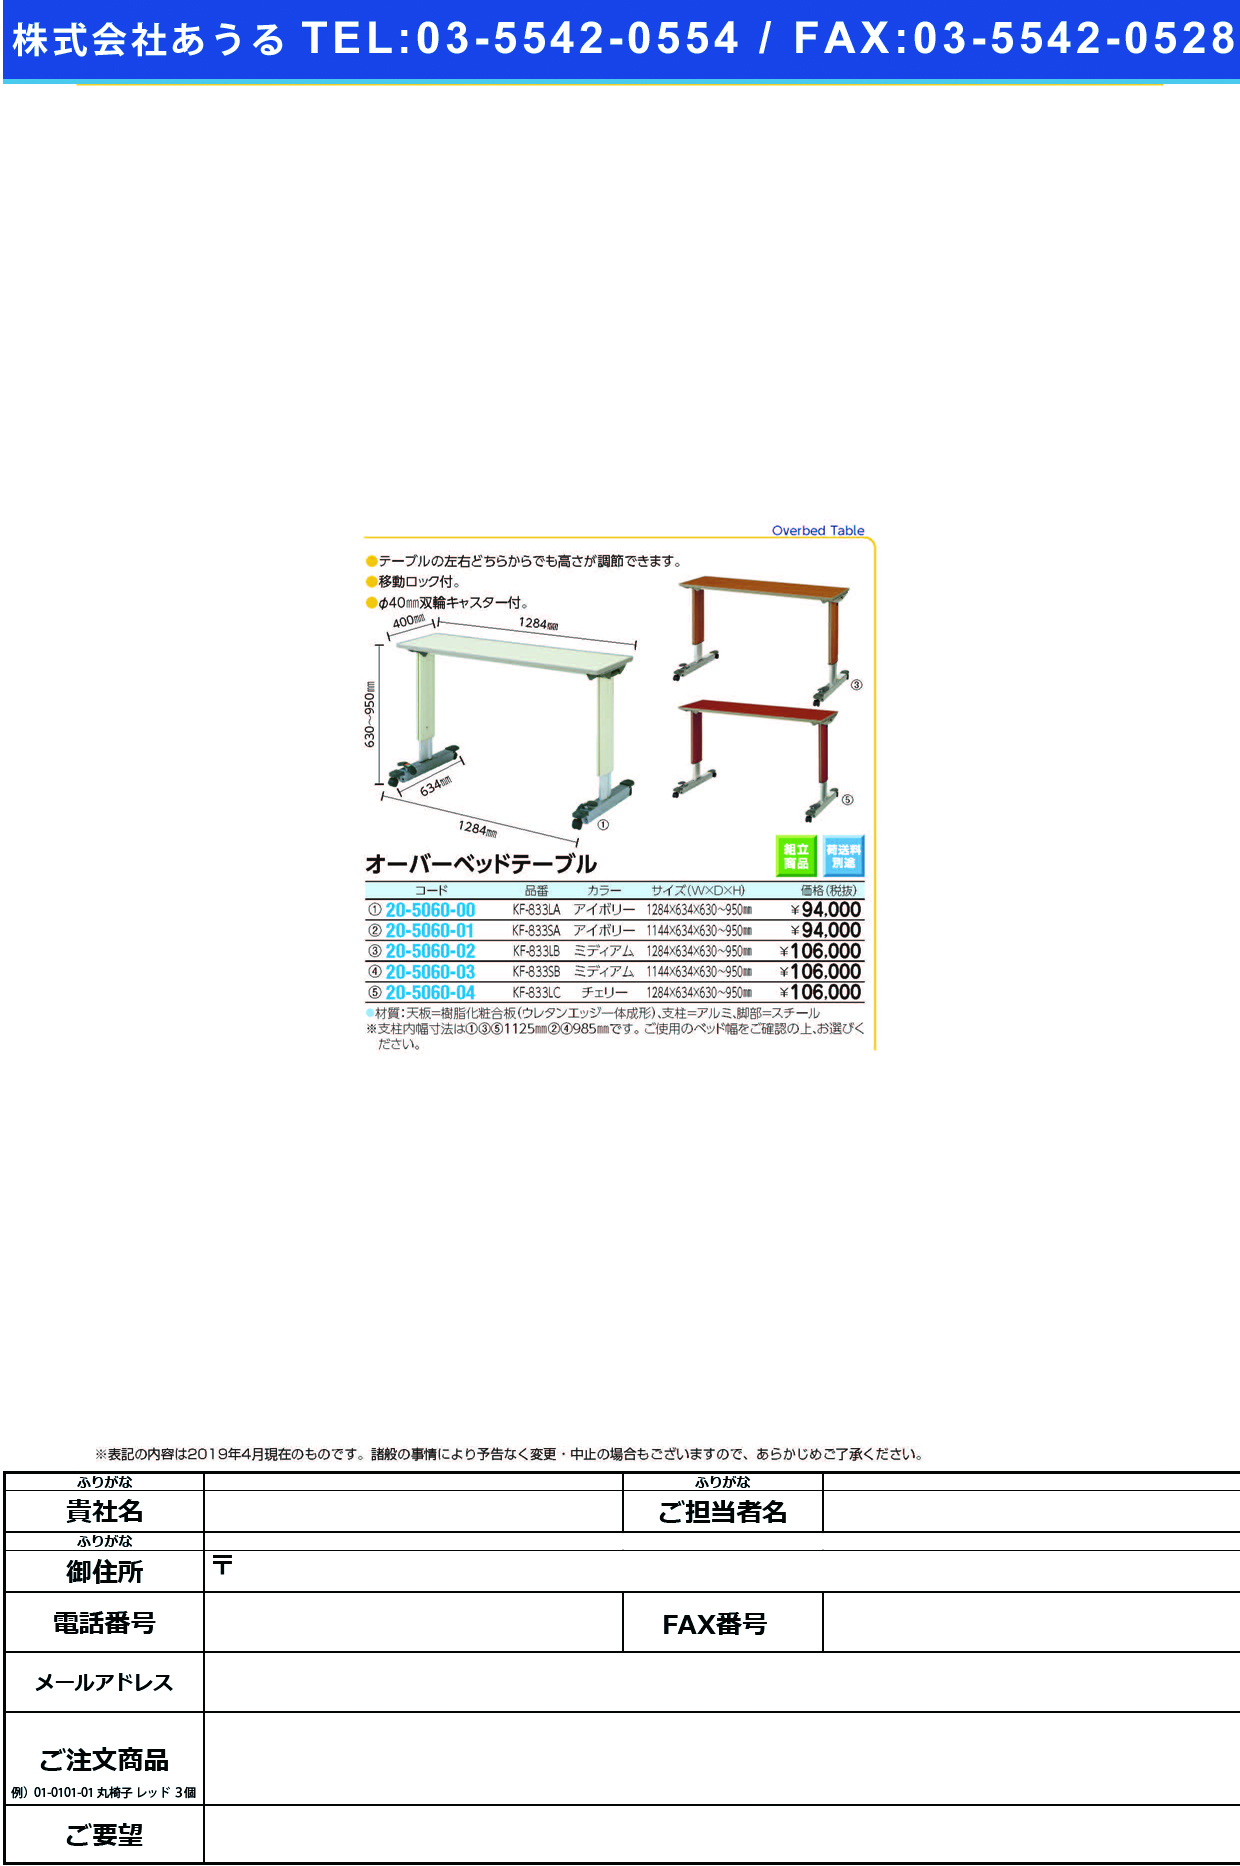 (20-5060-01)オーバーベッドテーブル（標準） KF-833SA(ｱｲﾎﾞﾘｰ) ｵｰﾊﾞｰﾍﾞﾄﾞﾃｰﾌﾞﾙ(パラマウントベッド)【1台単位】【2019年カタログ商品】